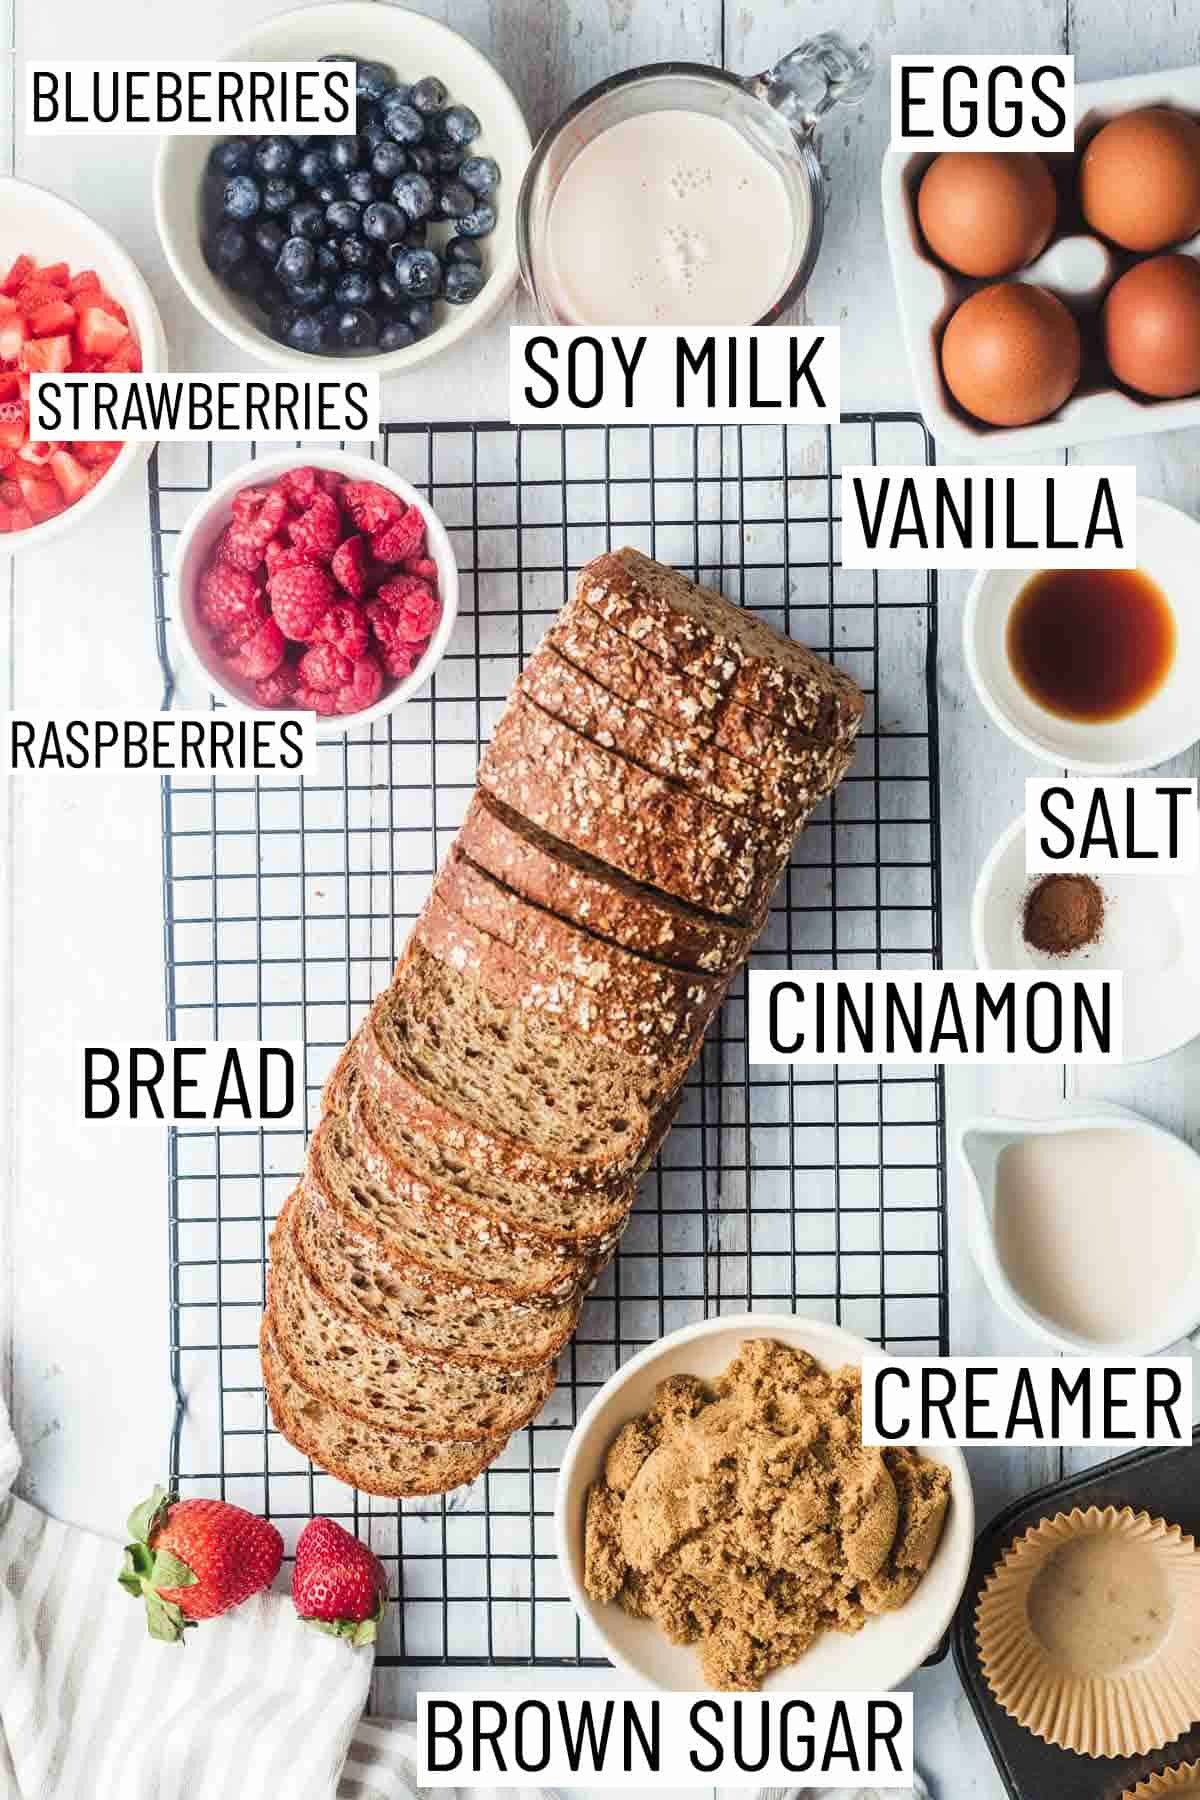 Overhead image of ingredients: soy milk, eggs, vanilla, salt, cinnamon, creamer, brown sugar, bread, berries.